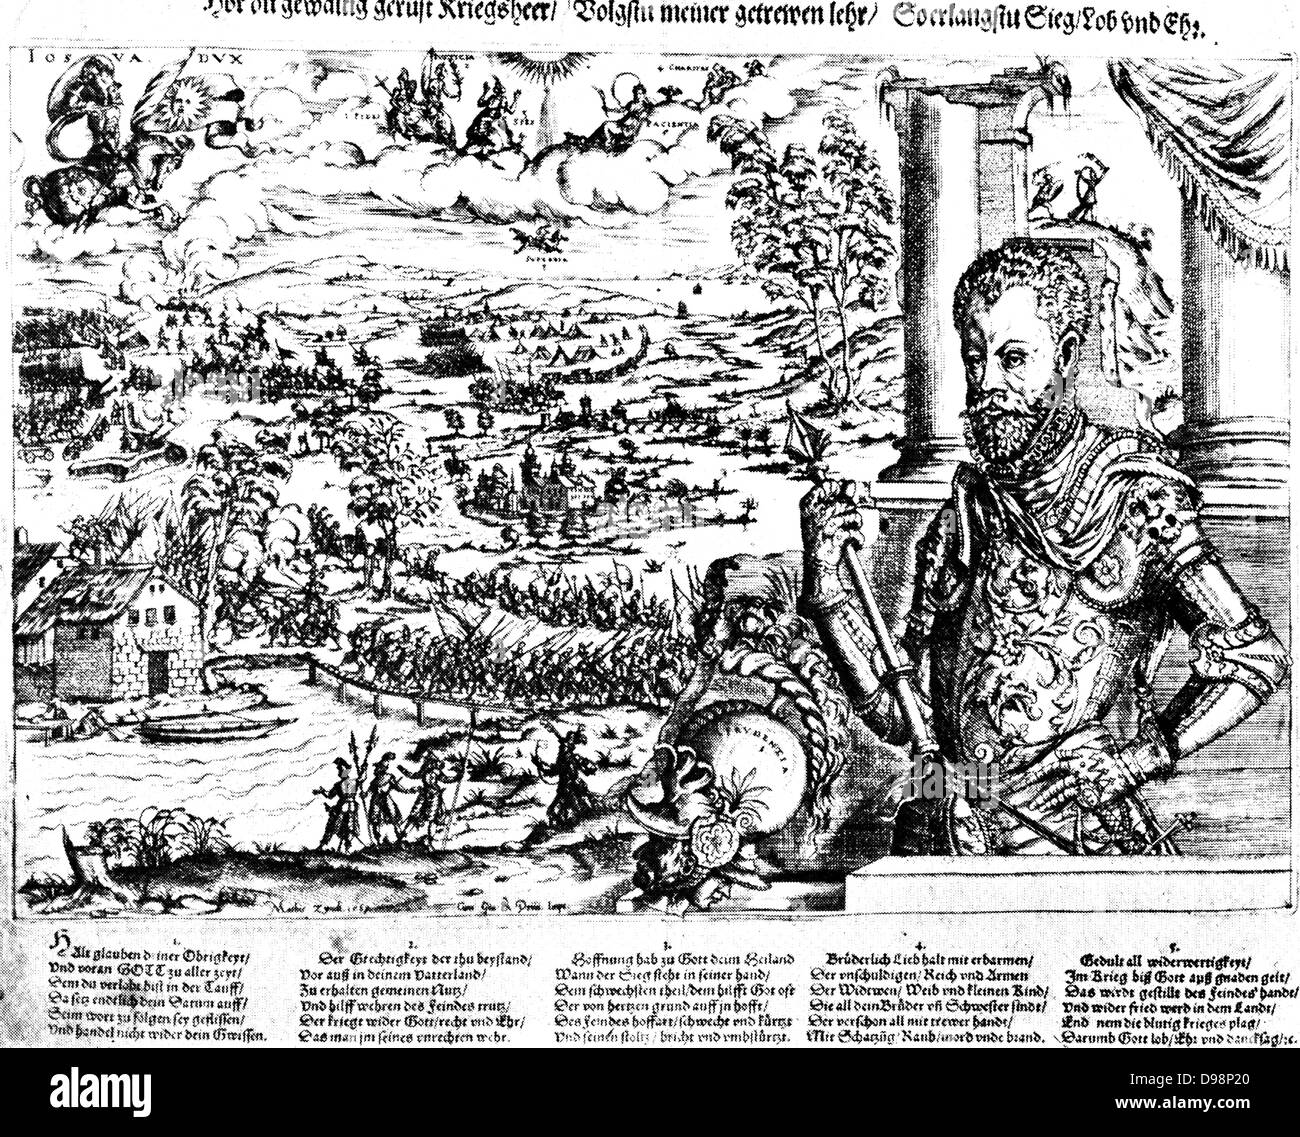 Guglielmo I, principe di Orange (24 Aprile 1533 - 10 luglio 1584), anche conosciuto come William la silenziosa (Olandese: Willem de Zwijger), o semplicemente Guglielmo d Orange (Olandese: Willem van Oranje), è stato il principale leader della rivolta olandese contro gli Spagnoli che impostato su off gli ottanta anni di guerra e ha comportato l'indipendenza formale delle province unite nel 1648. Egli era nato in casa di Nassau come conteggio di Nassau-Dillenburg. Egli divenne principe di Orange in 1544 e così è il fondatore della casa filiale di Orange-Nassau. Foto Stock